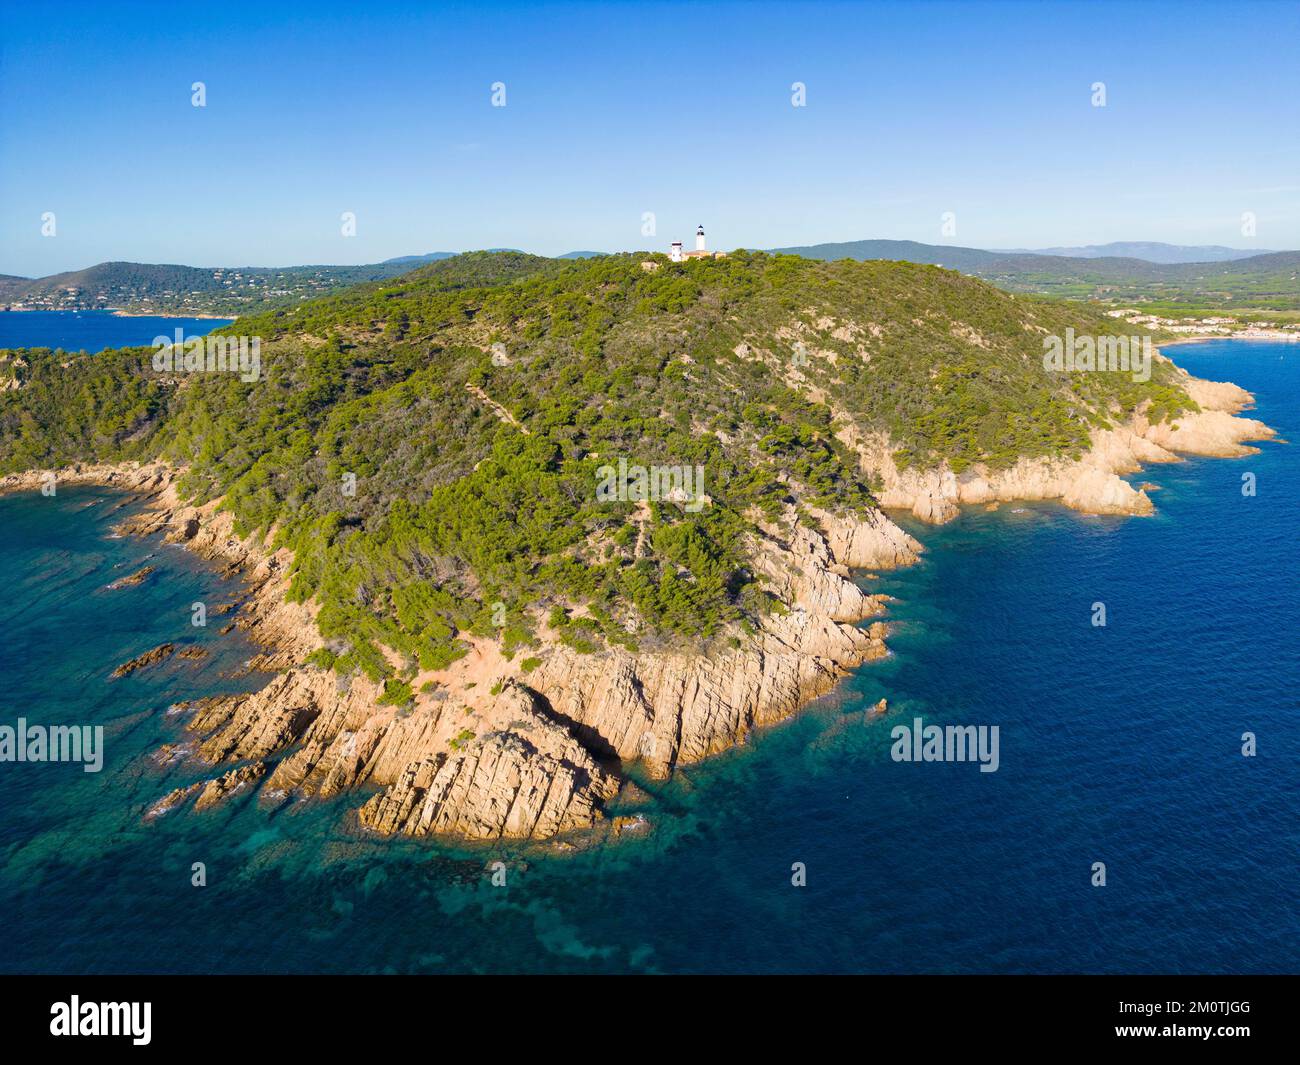 France, Var, presqu'île de Saint Tropez, la Croix Valmer, Cap Lardier (vue aérienne) Banque D'Images